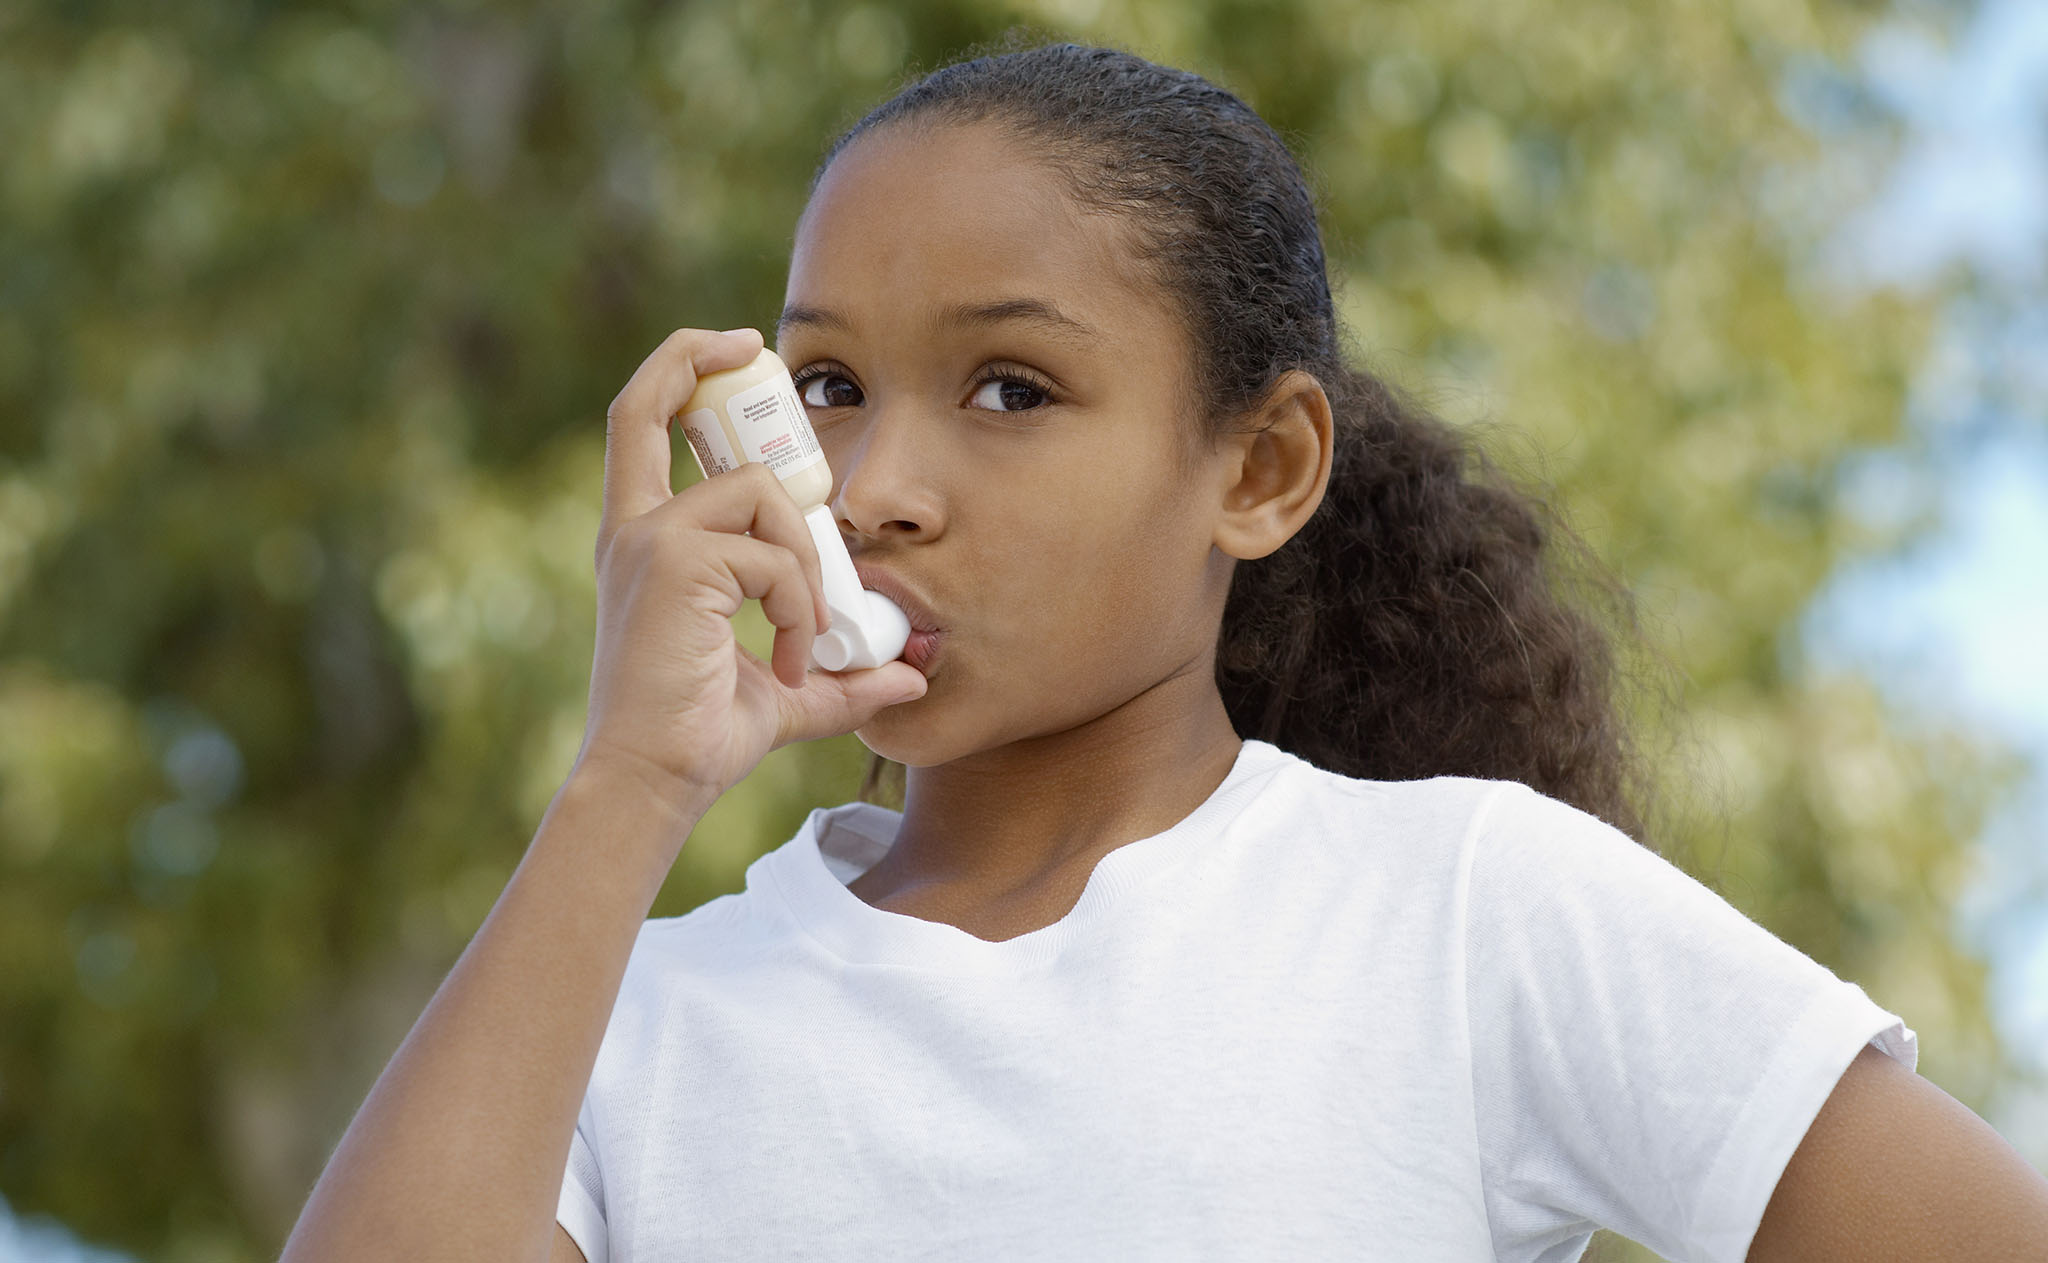 Child using asthma inhaler